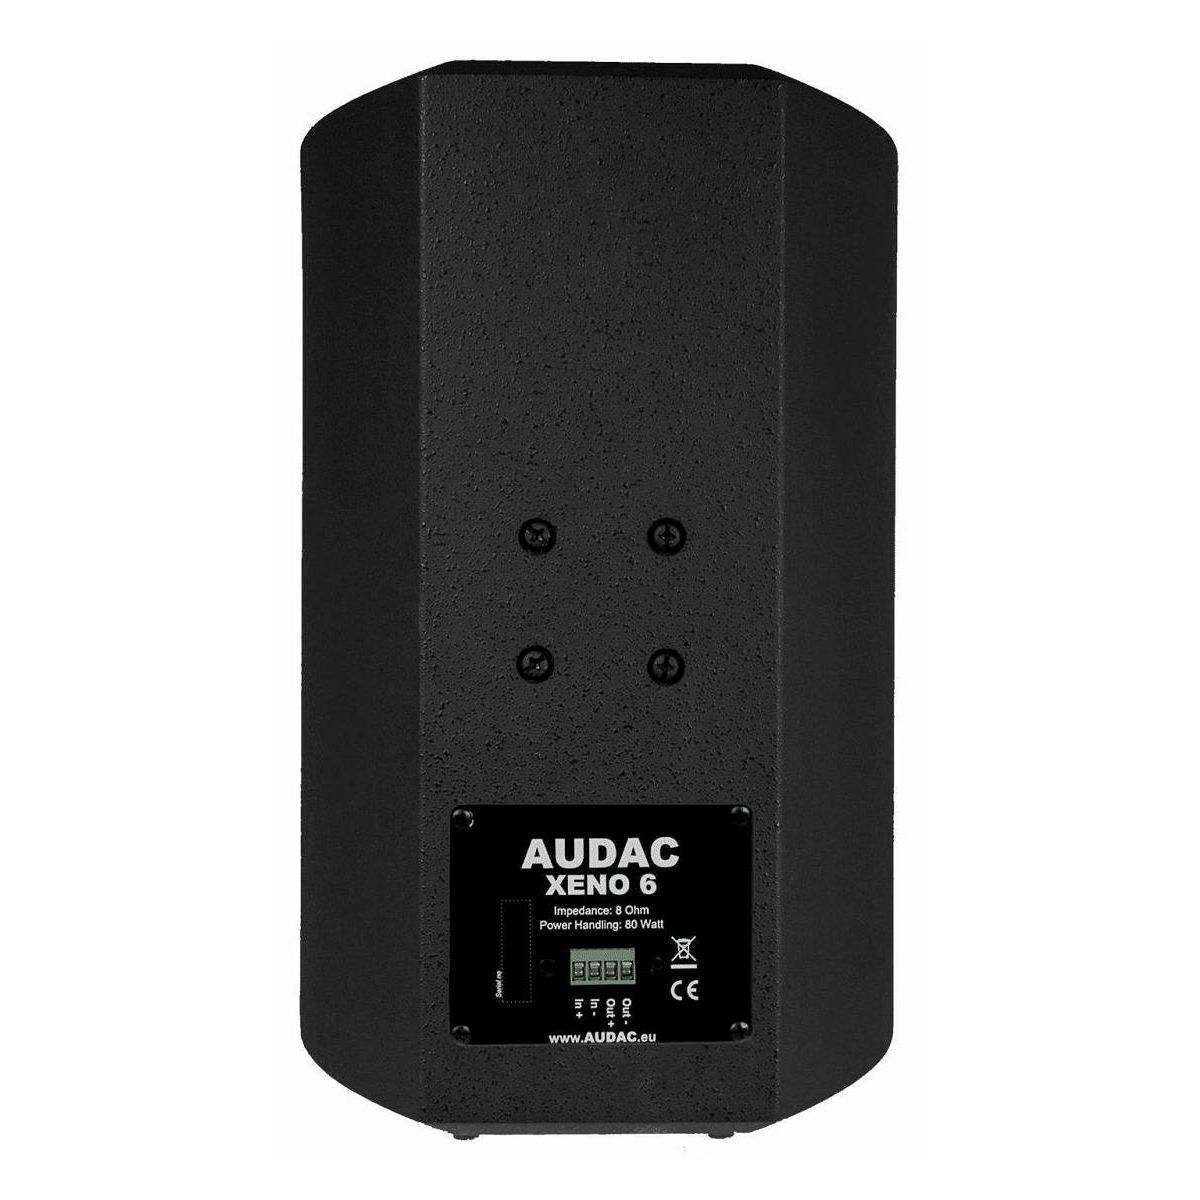 Audac XENO6/B Full Range Loudspeaker Cabinet dvosistemski zvučnik (1 kom)